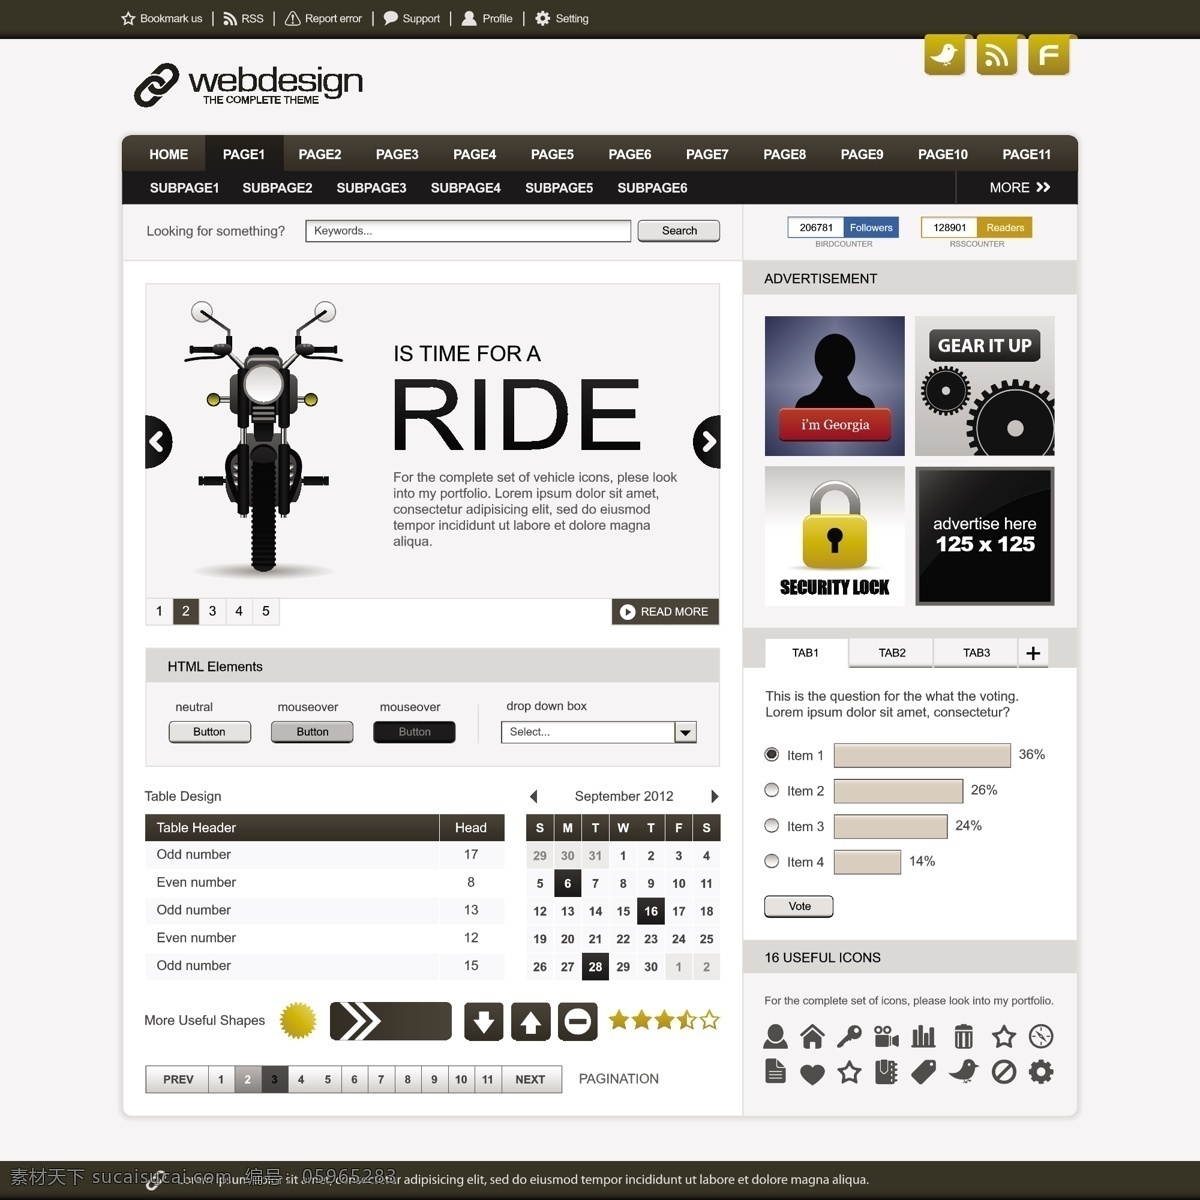 摩托车 网站 模板 网站设计 网站模板 网站界面设计 简洁 简约时尚 网页设计 网页设计模板 摩托车网站 其他模板 矢量素材 白色